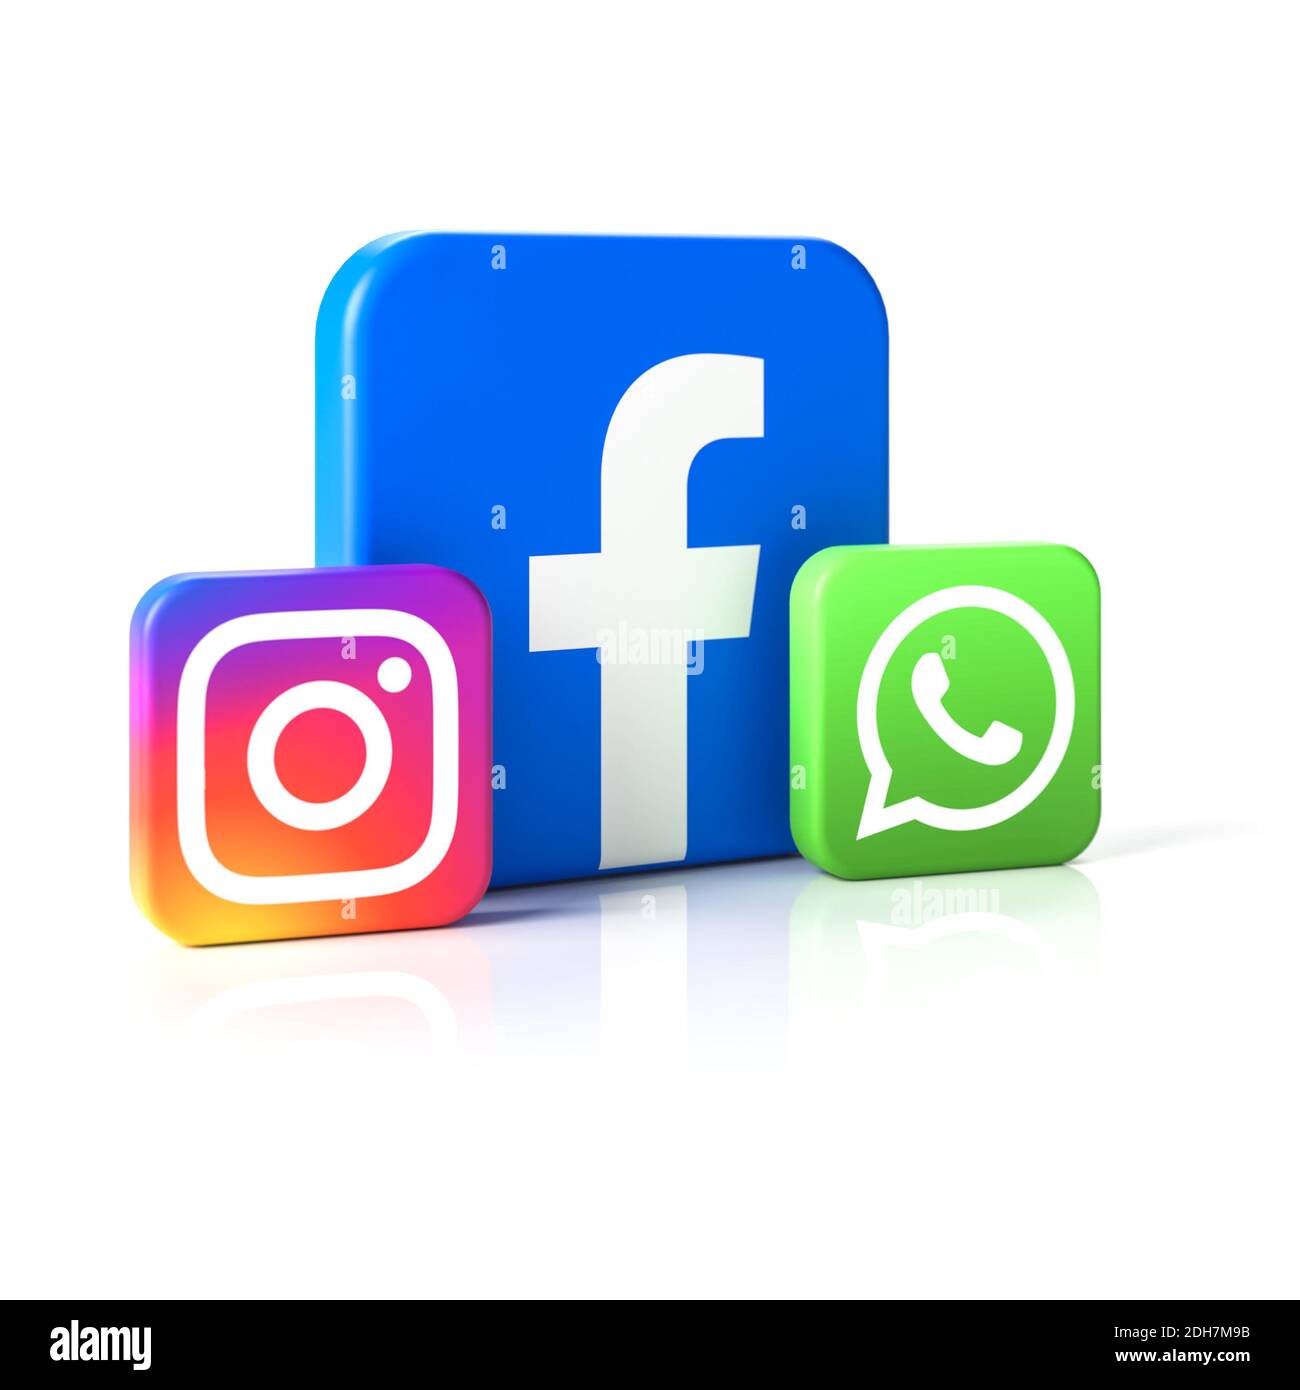 Logos der Social Media Unternehmen Facebook, Instagram und Whatsapp. Instagram und Whatsapp gehören zur Facebook-Gruppe, deshalb ist Facebook bei Stockfoto